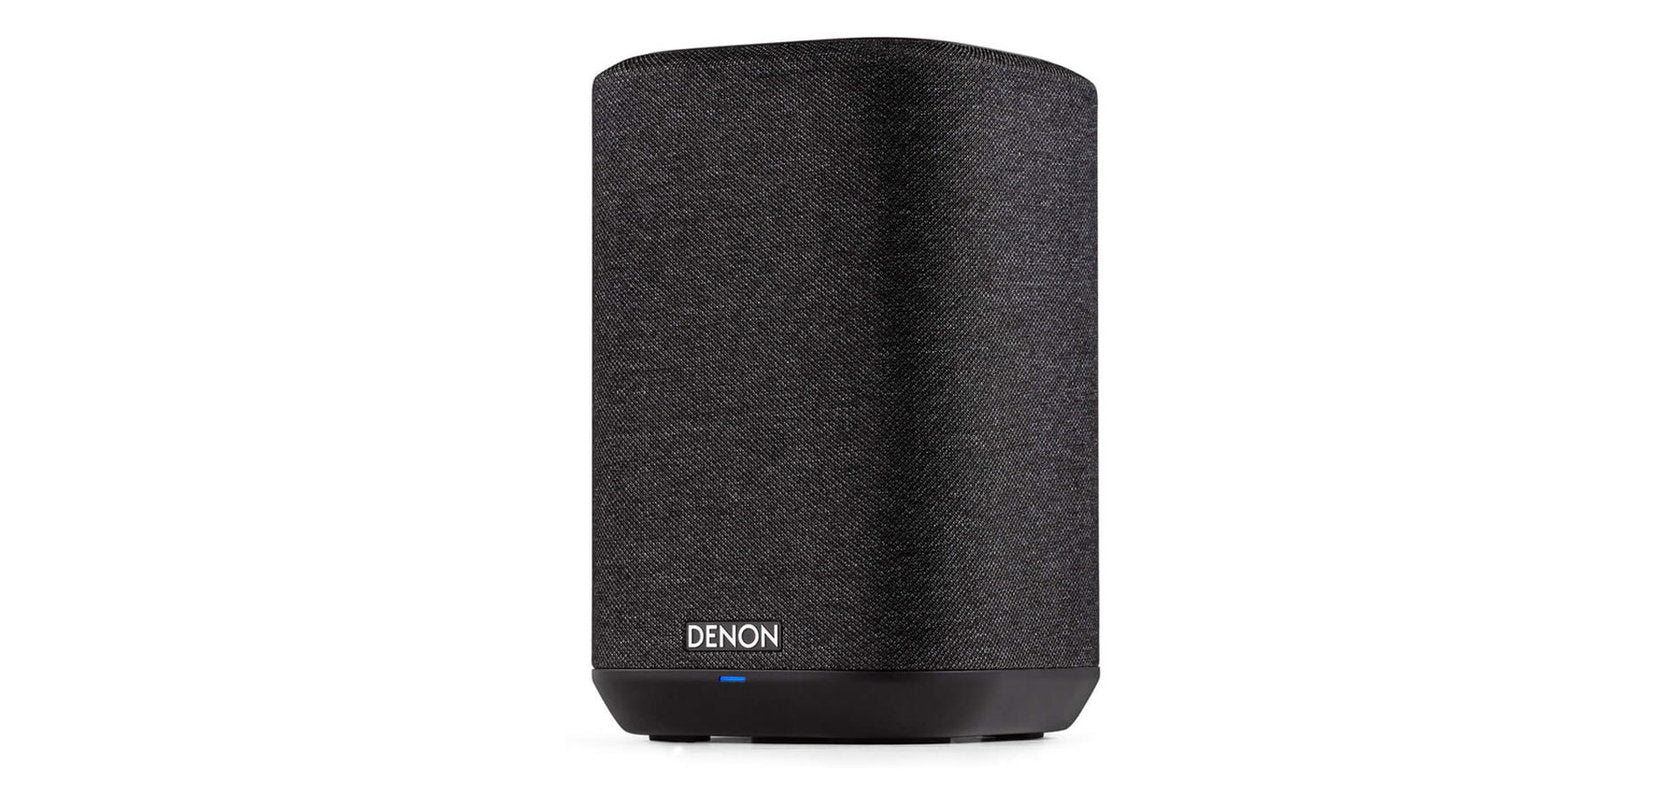 Denon Home 150 network speaker